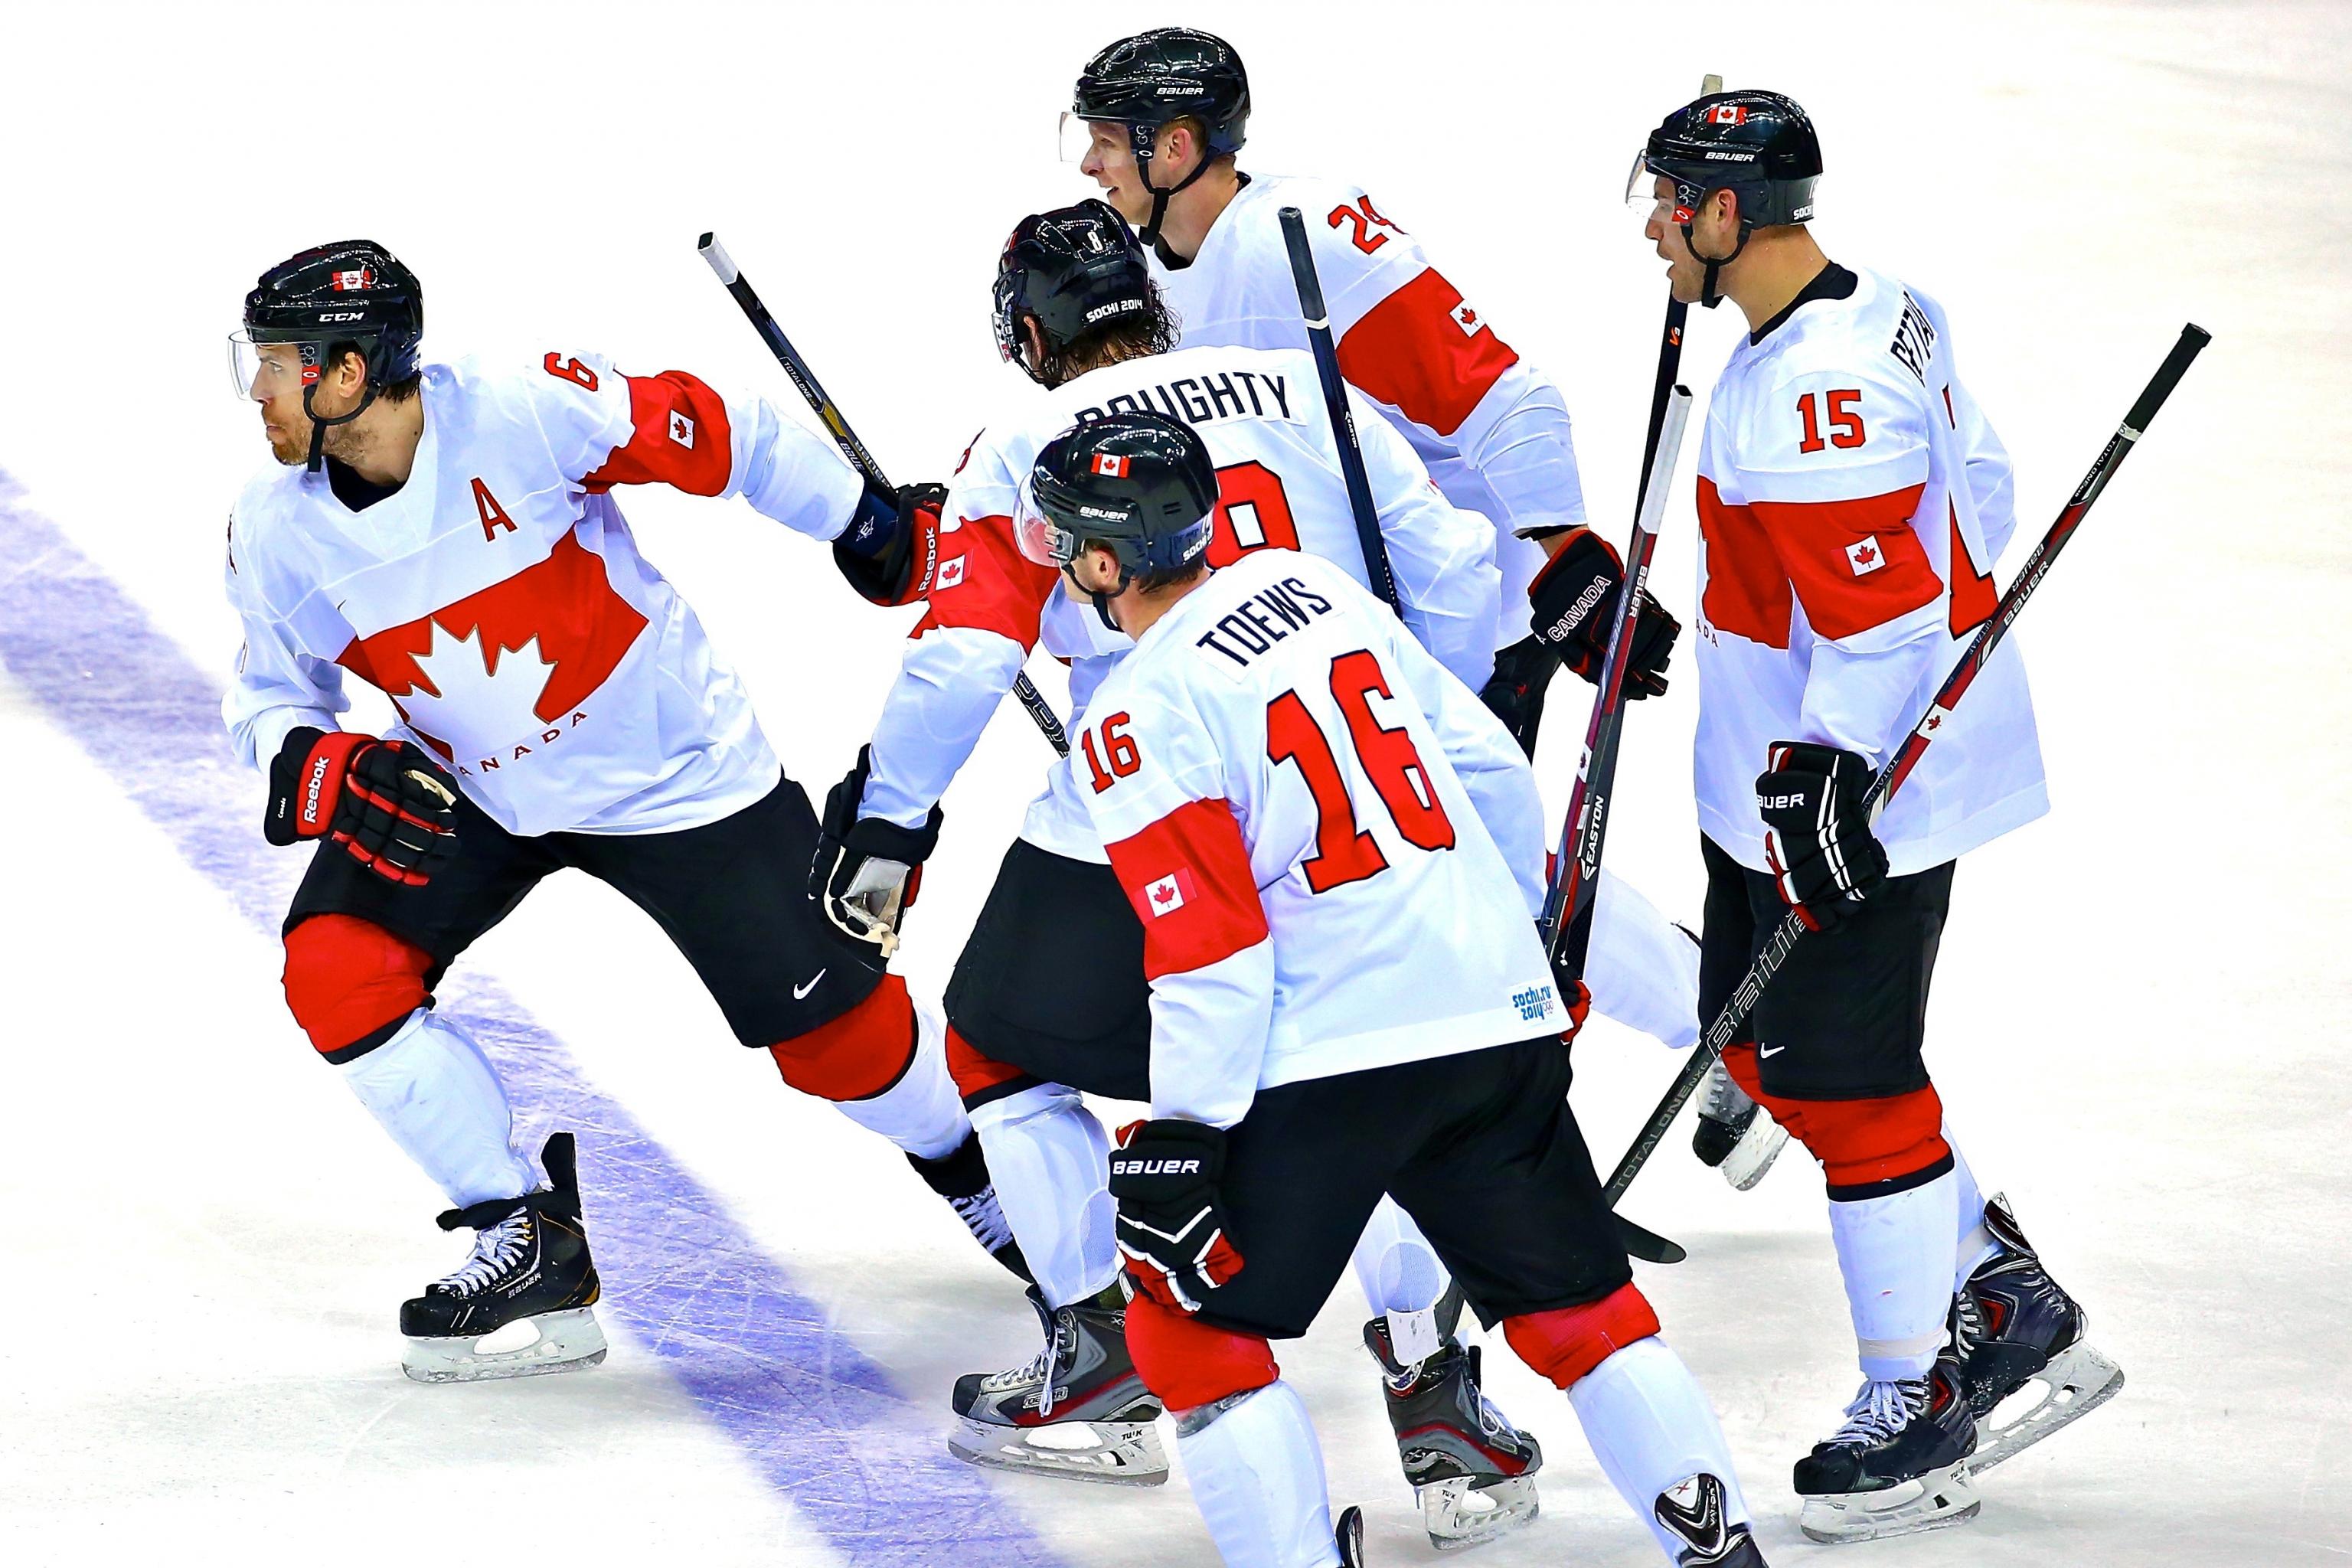 Sochi 2014: Canada, Jeff Carter's Hat Trick Dominate Austria, 6-0